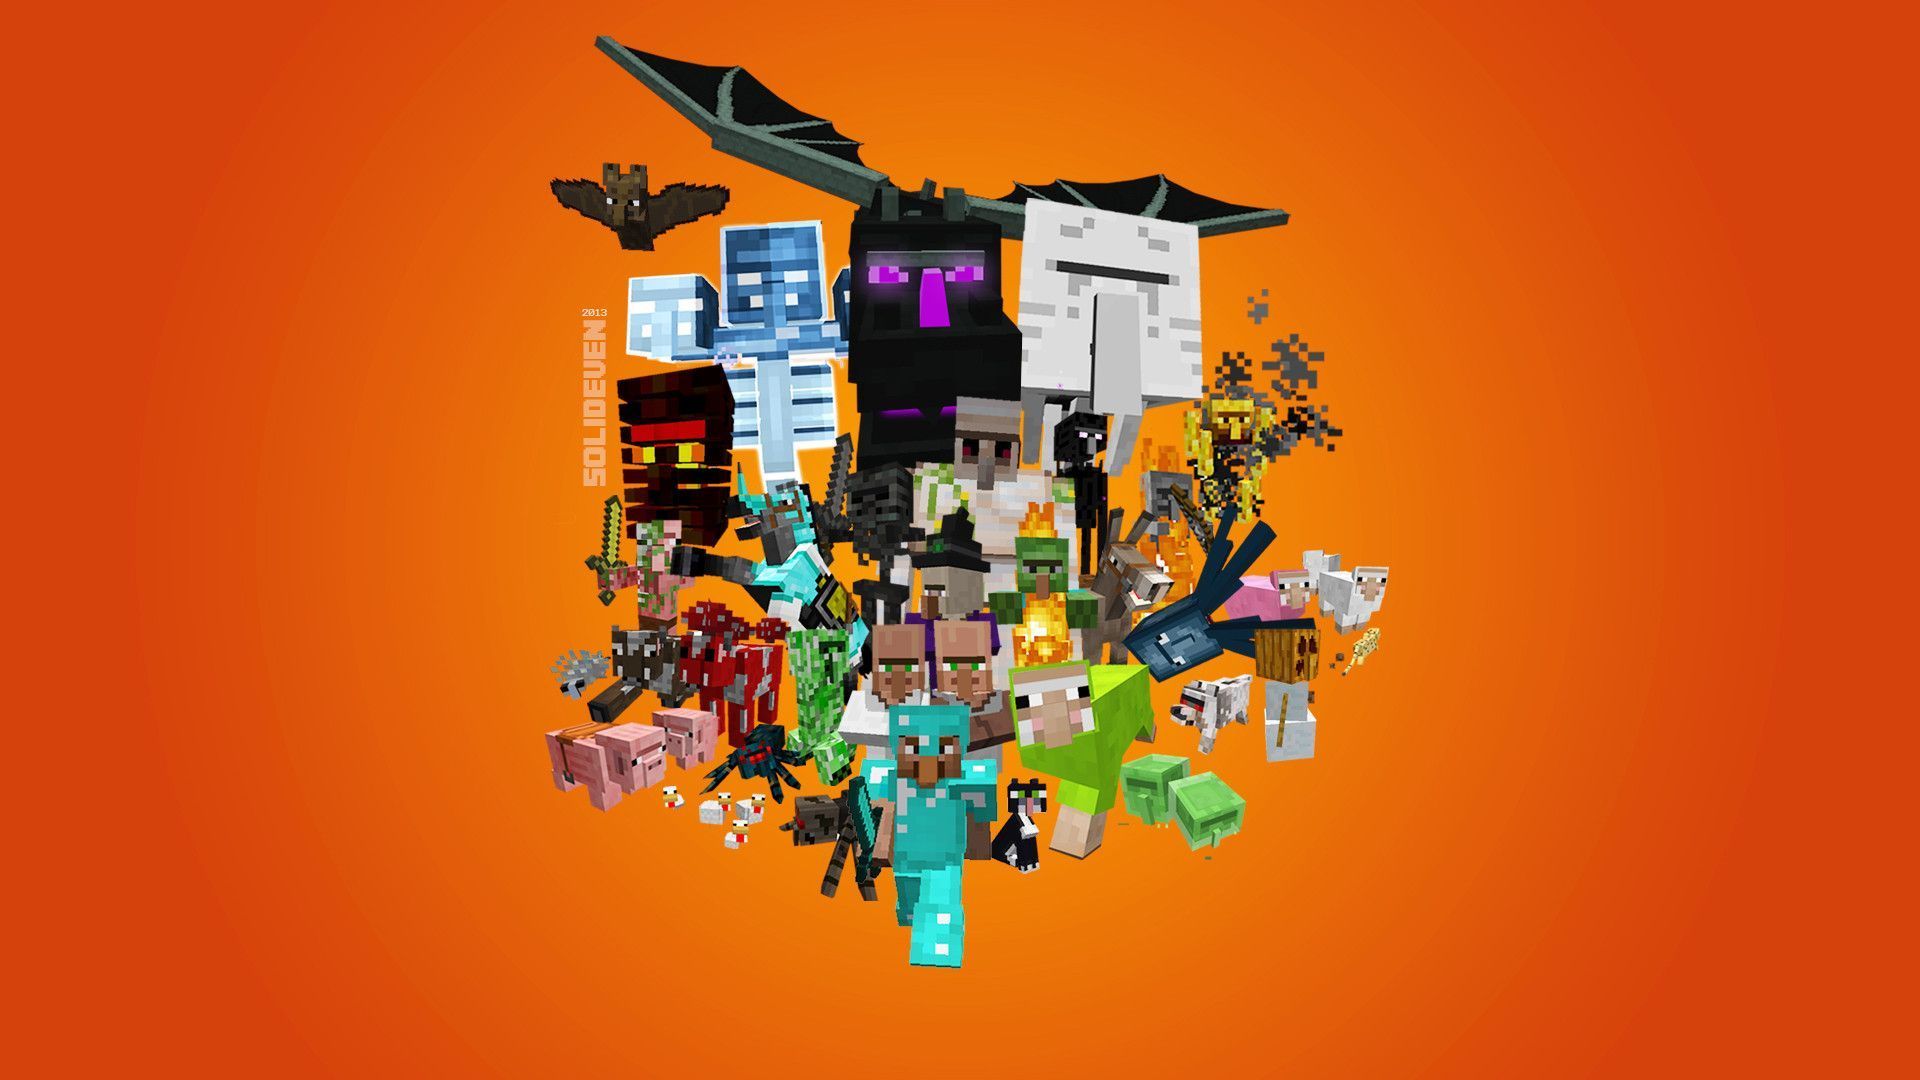 Villager Universe Minecraft Wallpaper 1080p - Other Fan Art